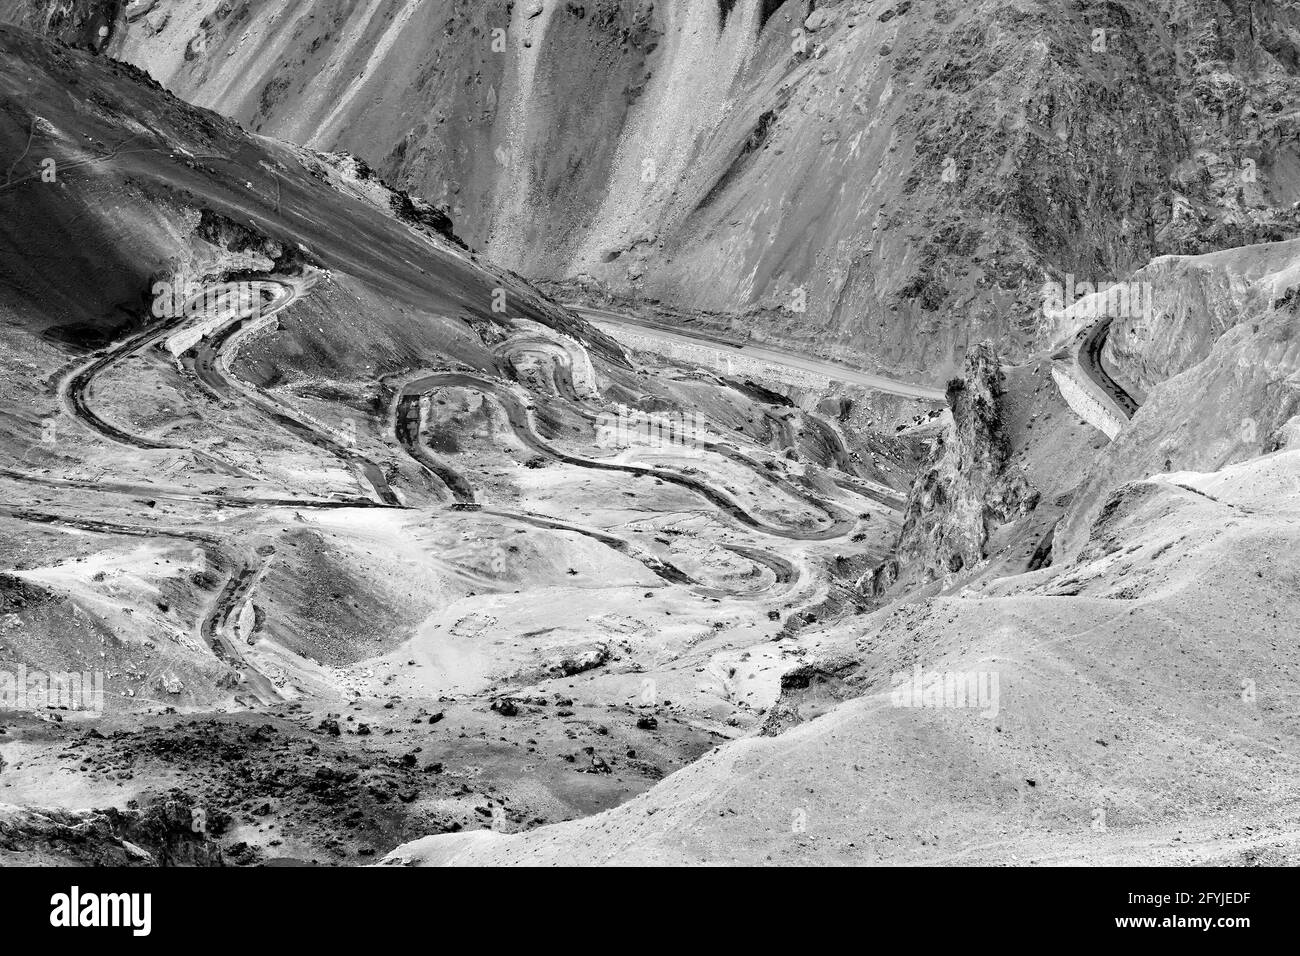 Luftaufnahme der Zigzag Straße - bekannt als jilabi Straße an der alten Route des Leh Srinagar Highway, Ladakh, Jammu und Kaschmir, Indien. Schwarz und Weiß. Stockfoto